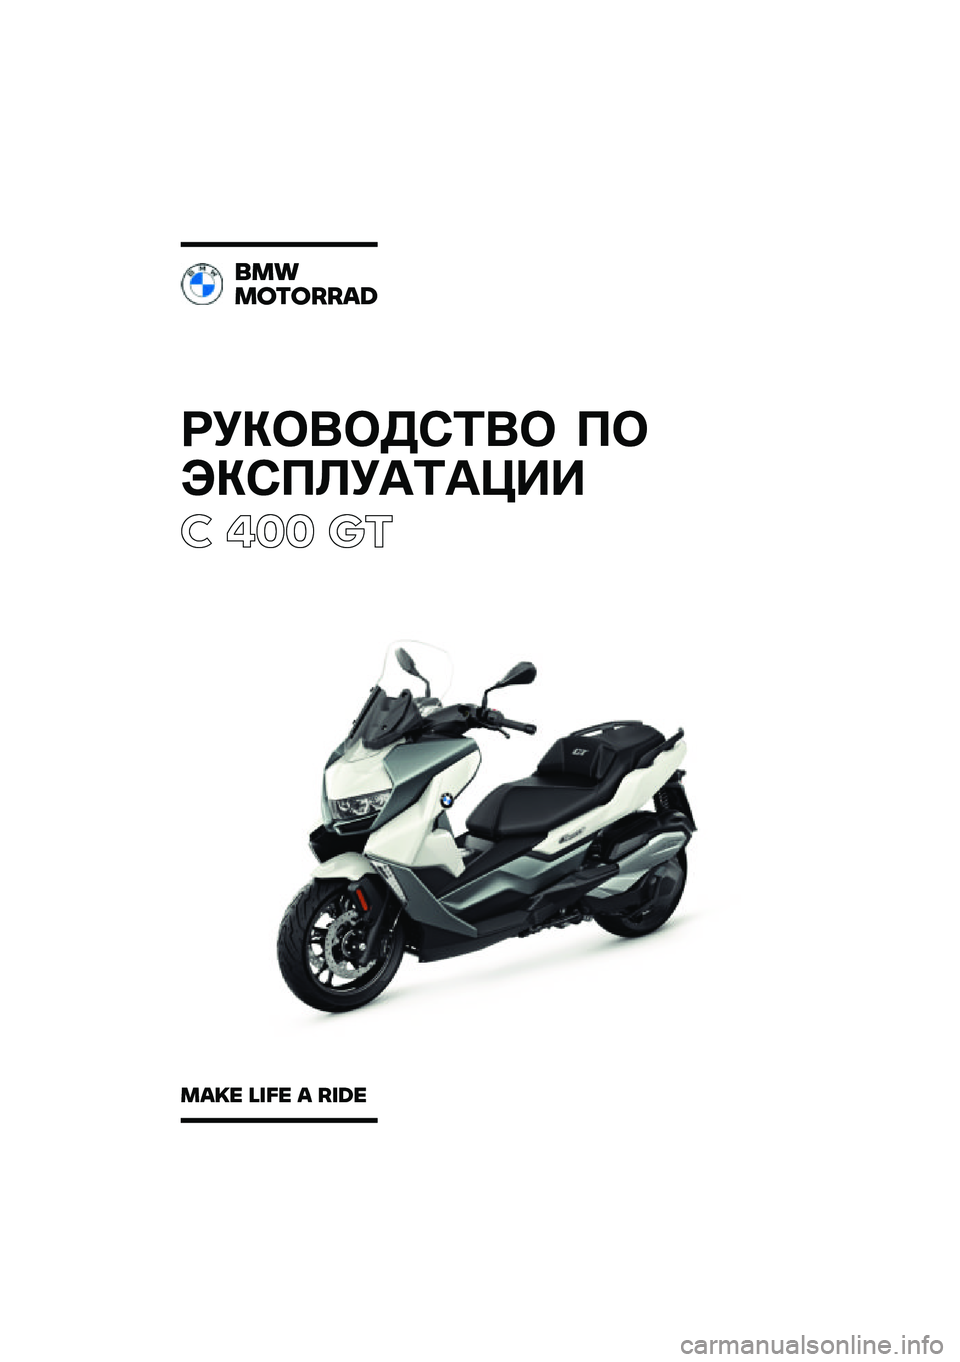 BMW MOTORRAD C 400 GT 2021  Руководство по эксплуатации (in Russian) ��������\b�	�� �
�
���\b�
�\f��
�	�
���
� ��� ��\b
���
�������\b�	
��\b�
� �\f�
�� �\b ��
�	� 